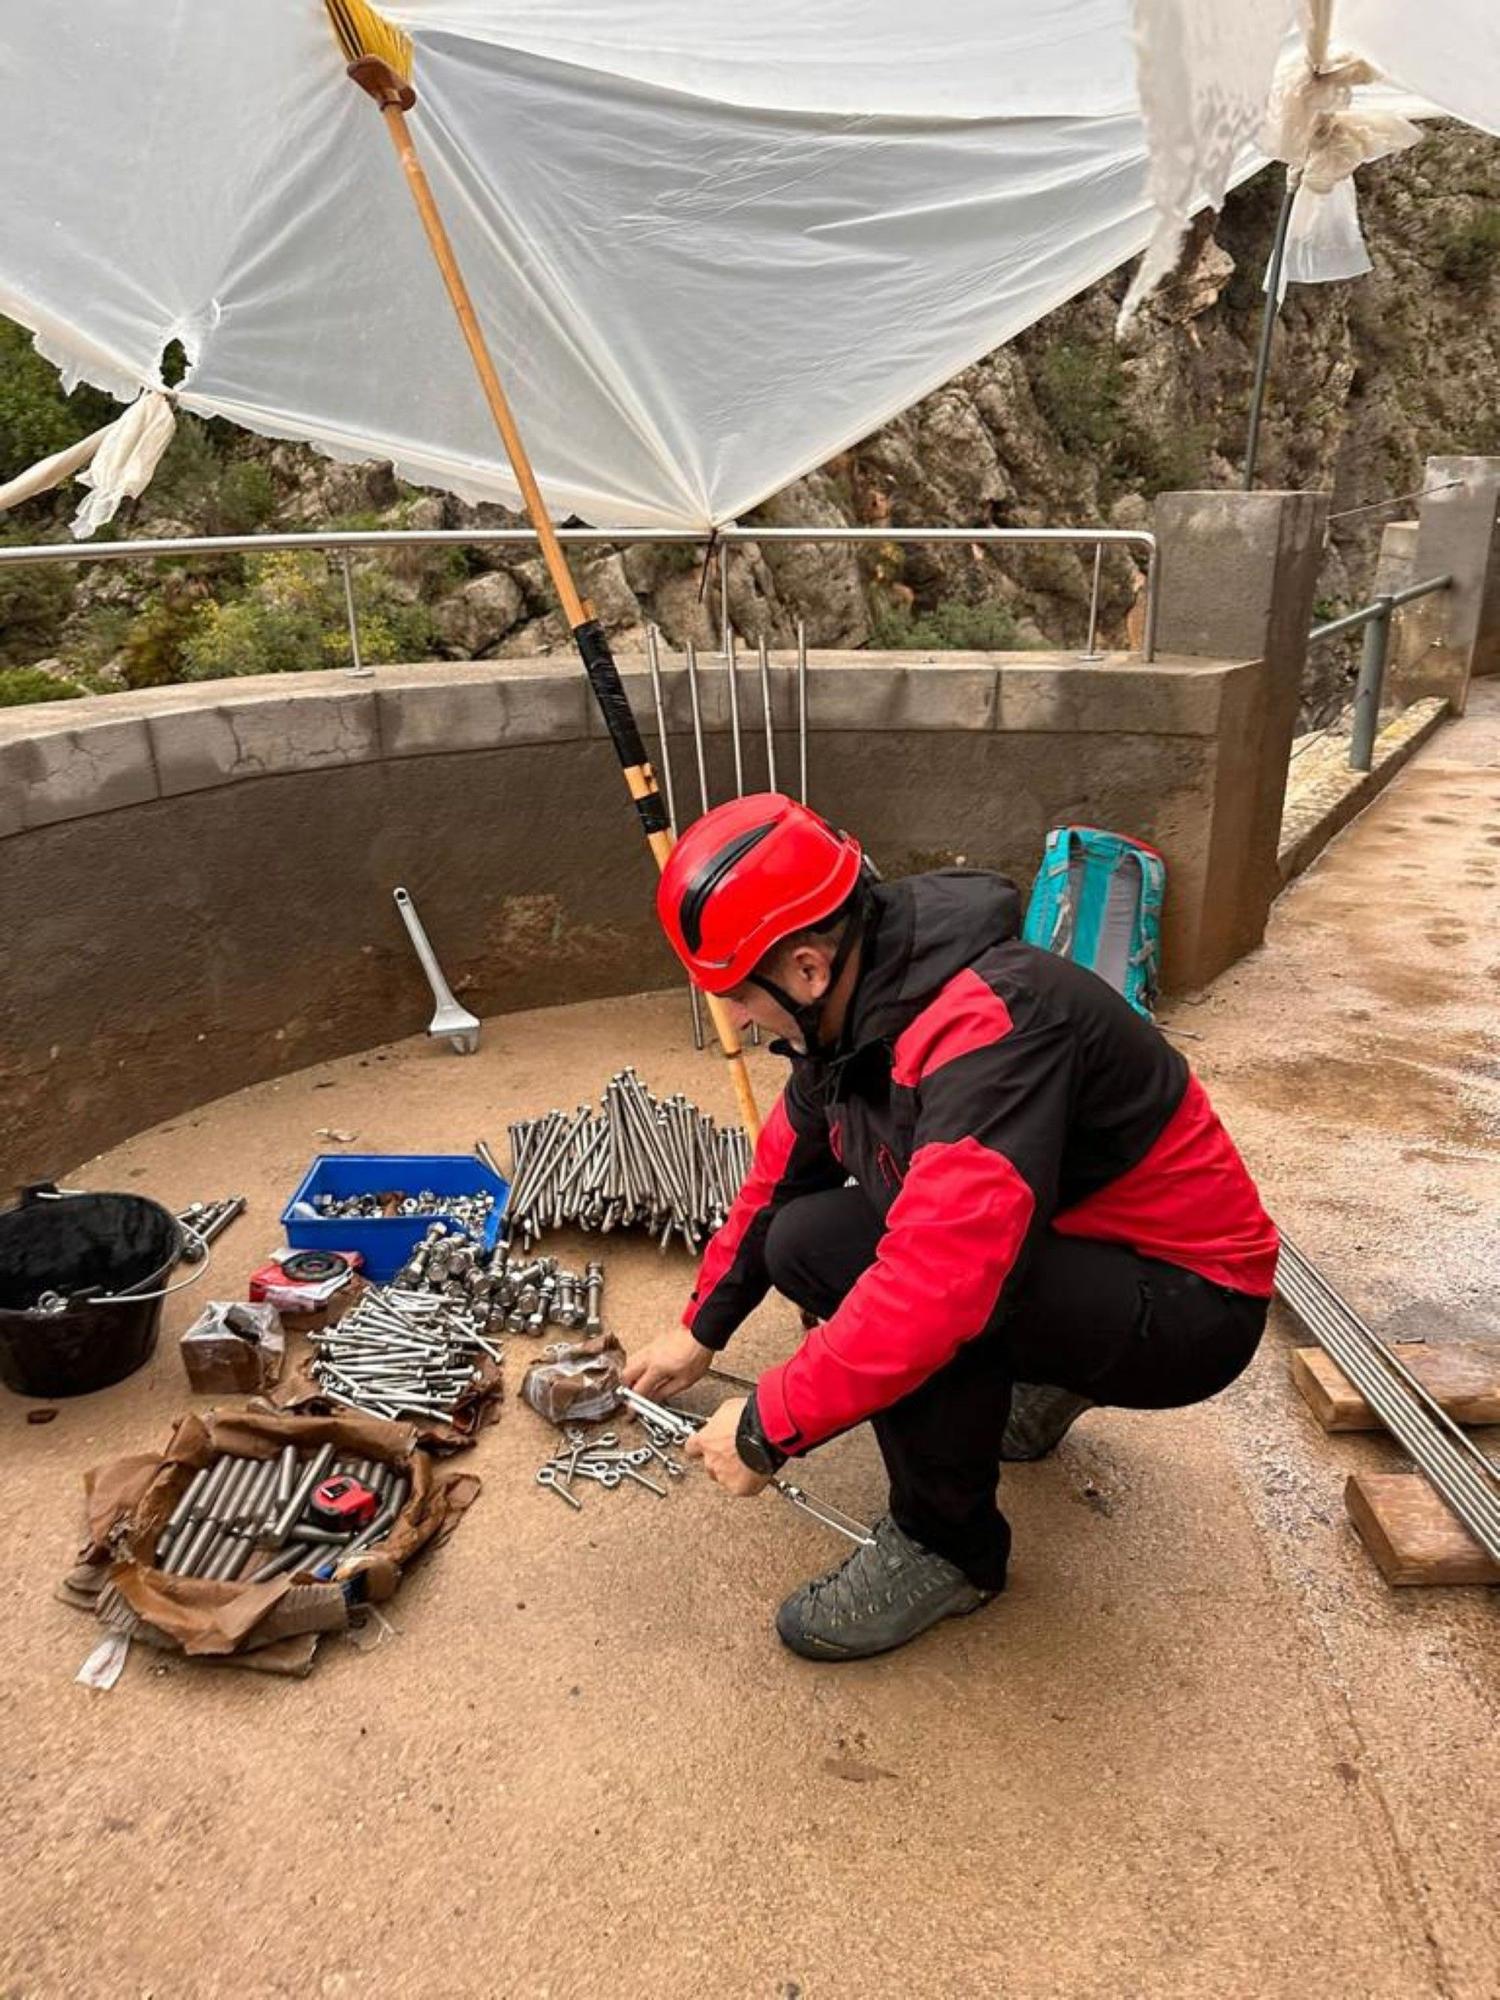 Técnicos del Caminito del Rey revisan la instalación tras los desprendimientos de rocas por las lluvias